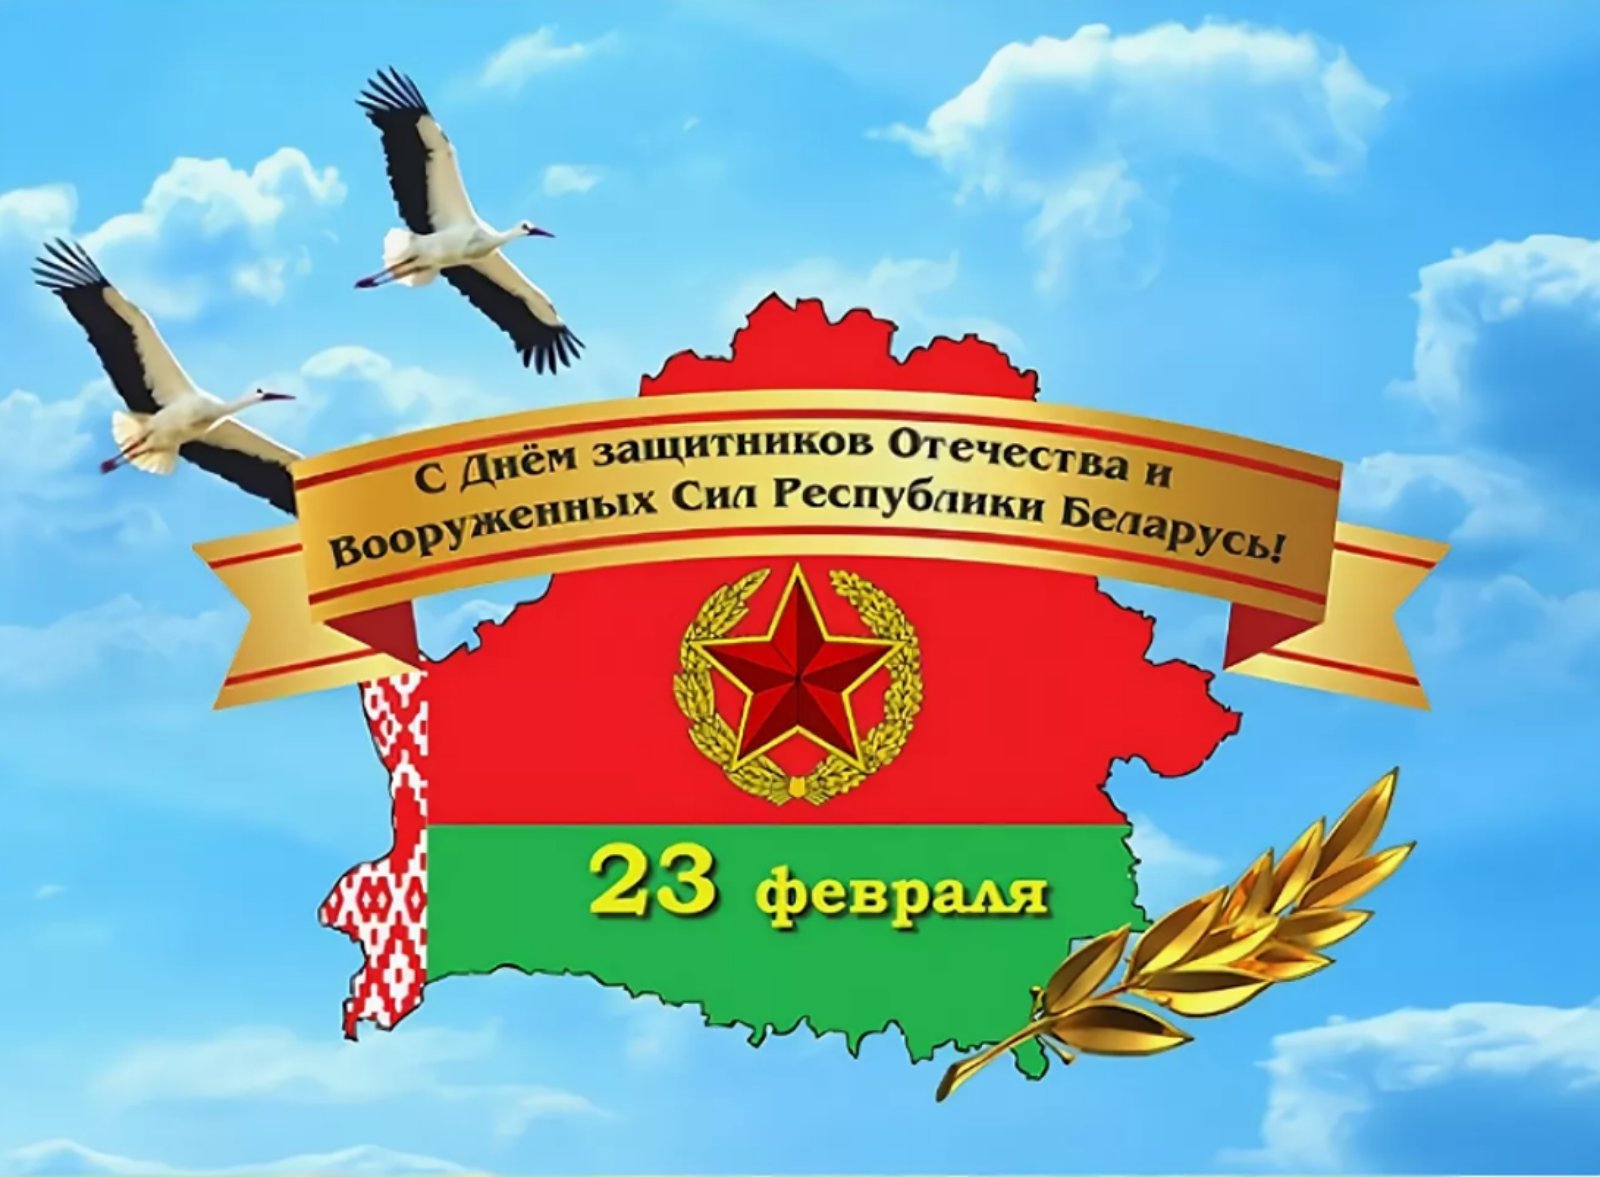 23 Февраля с днем защитников Отечества Беларусь